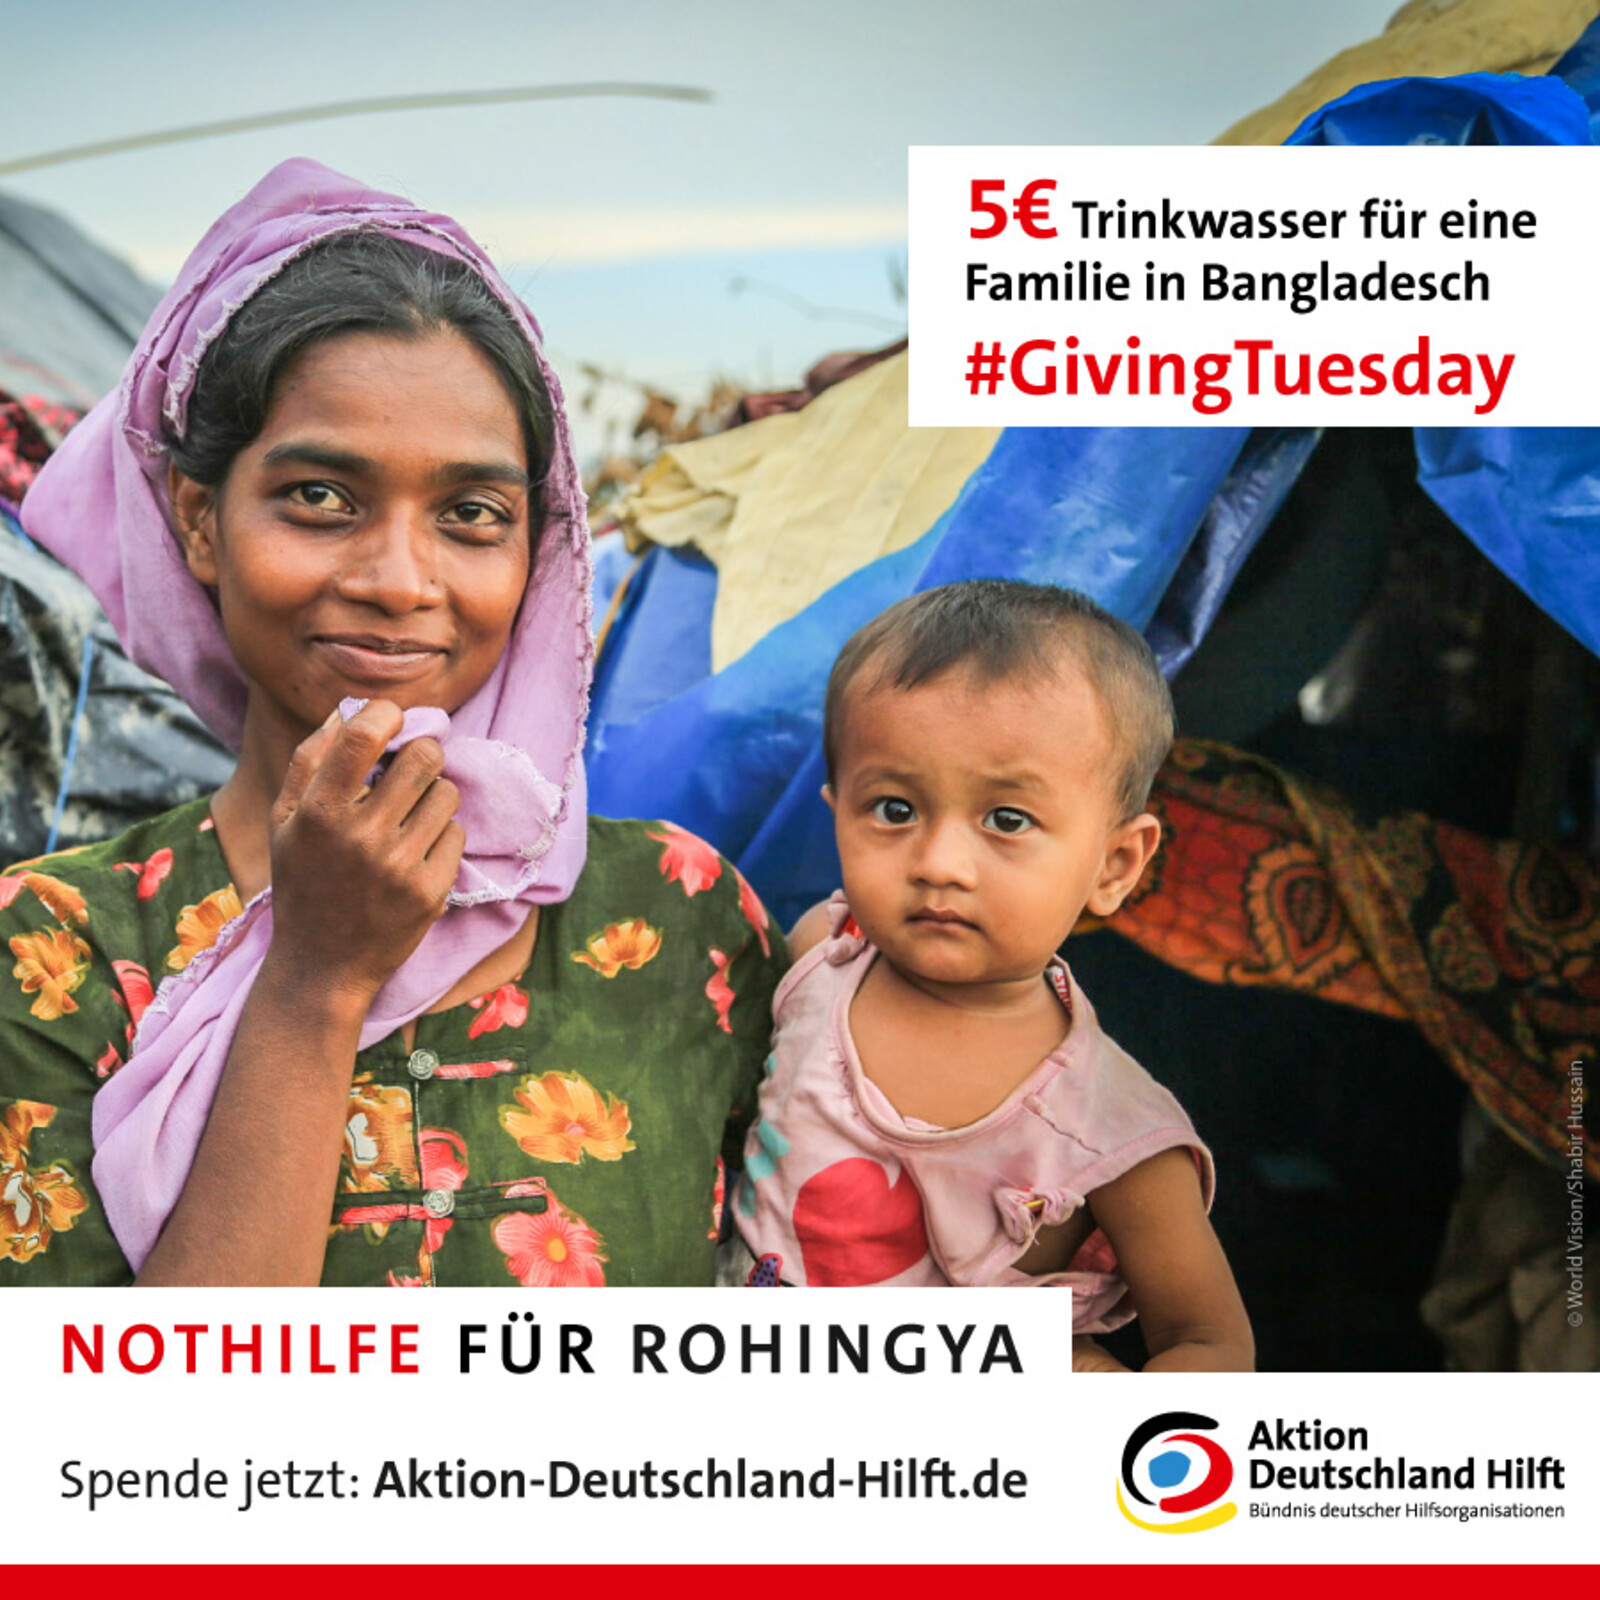 Nothilfe für die Rohingya in Myanmar und Bangladesch: 5 Euro schenken einer Rohingya-Familie Trinkwasser